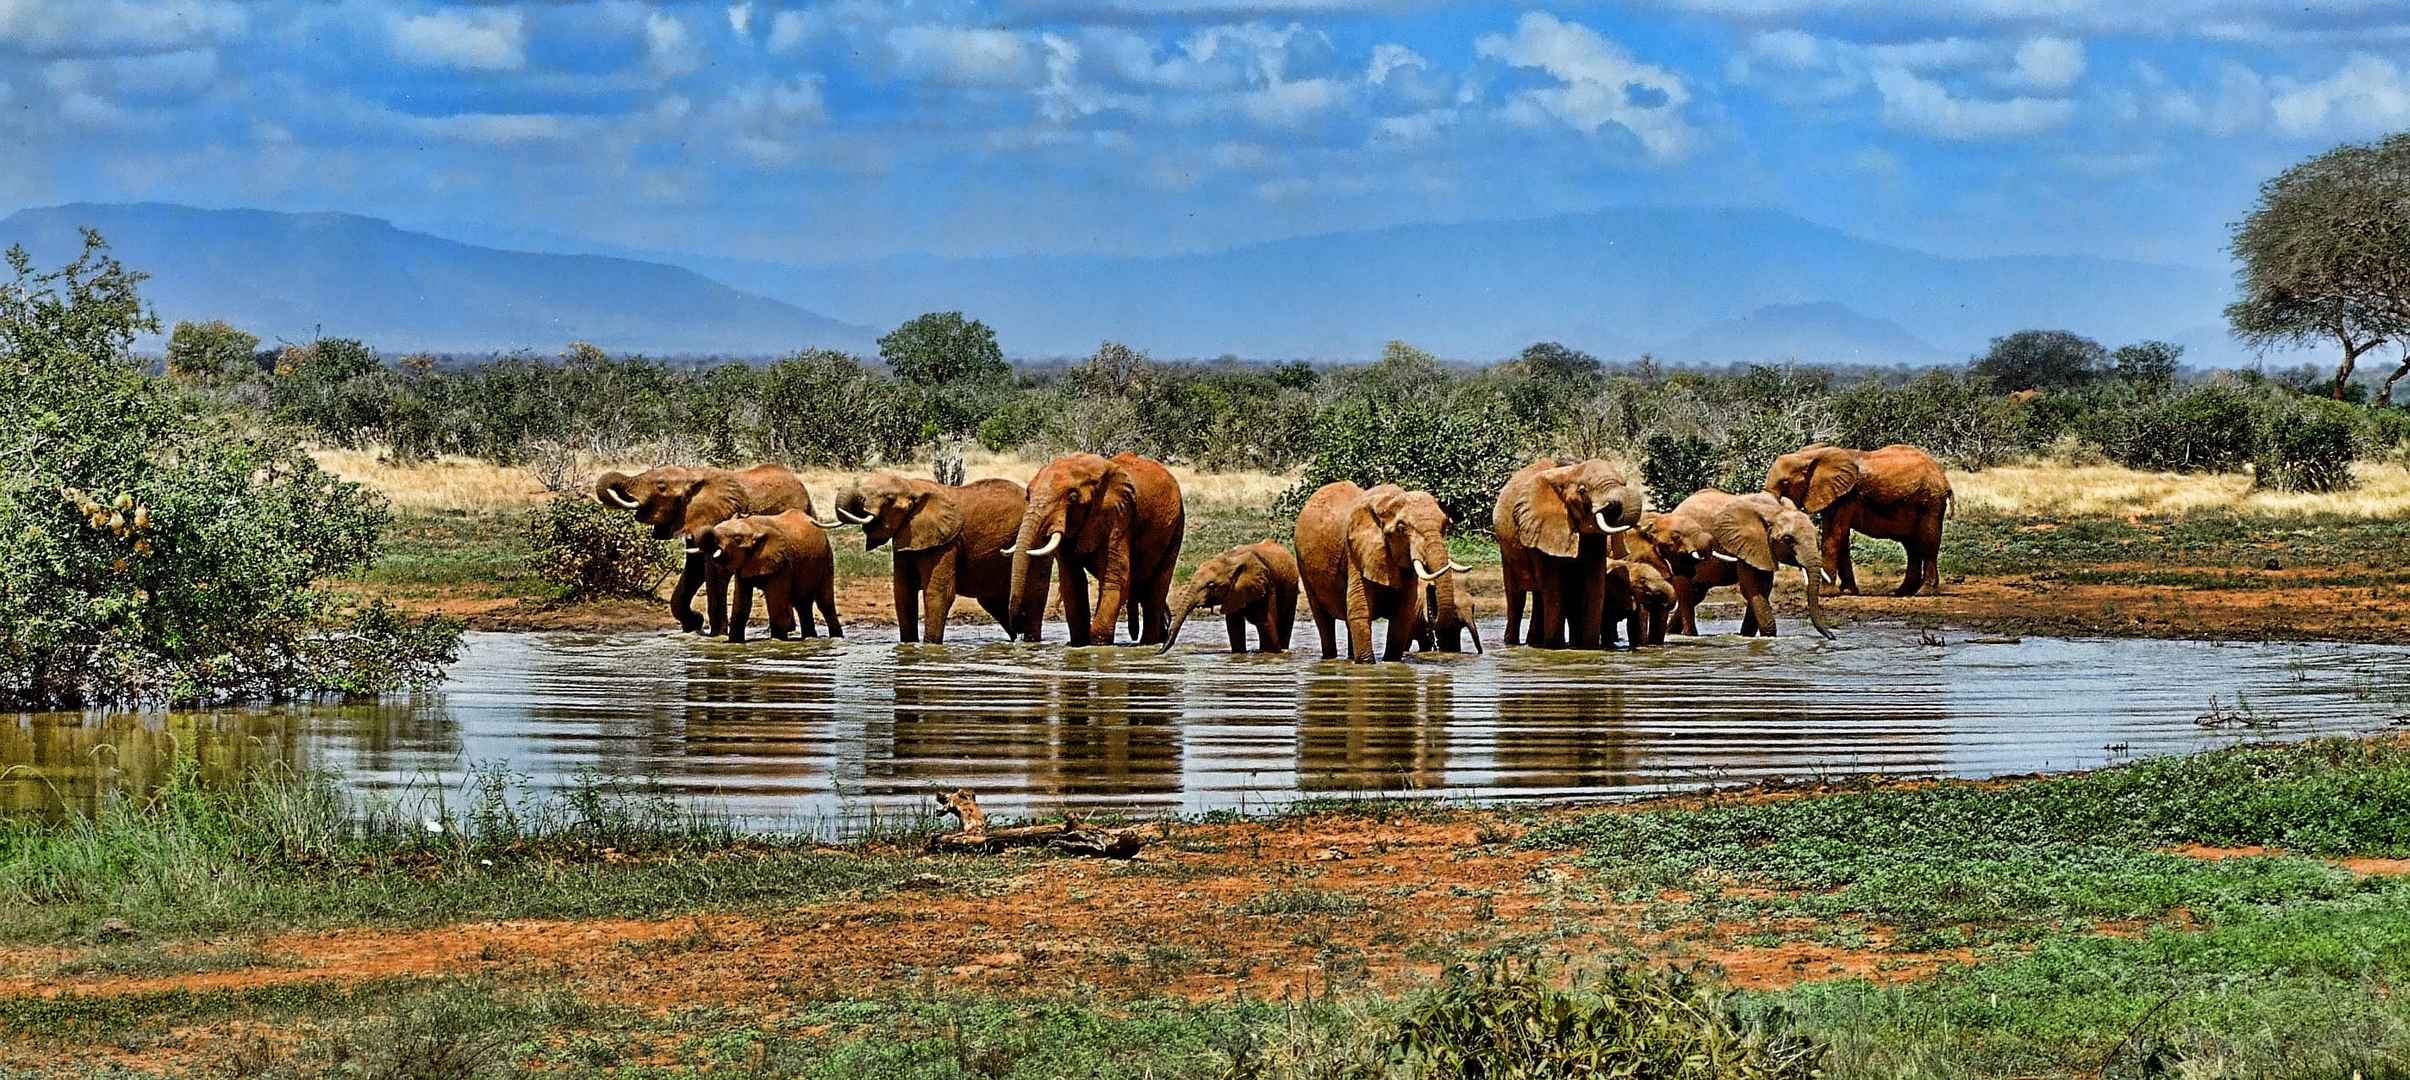 非洲草原大象群壁纸-